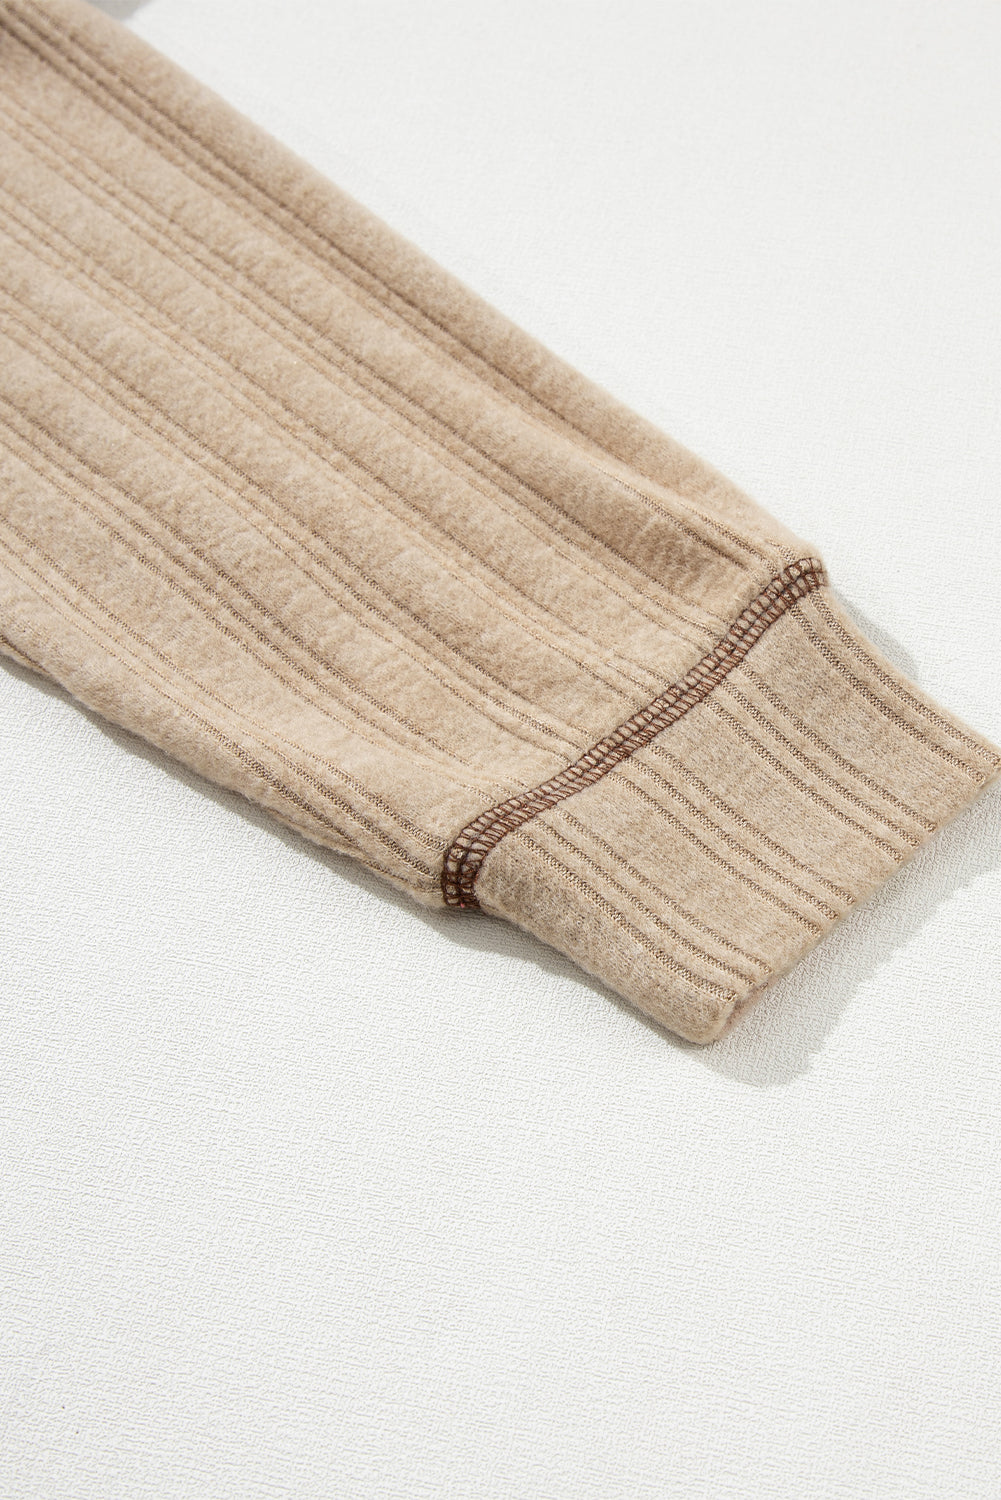 Haut ample en tricot texturé kaki pâle à coutures apparentes